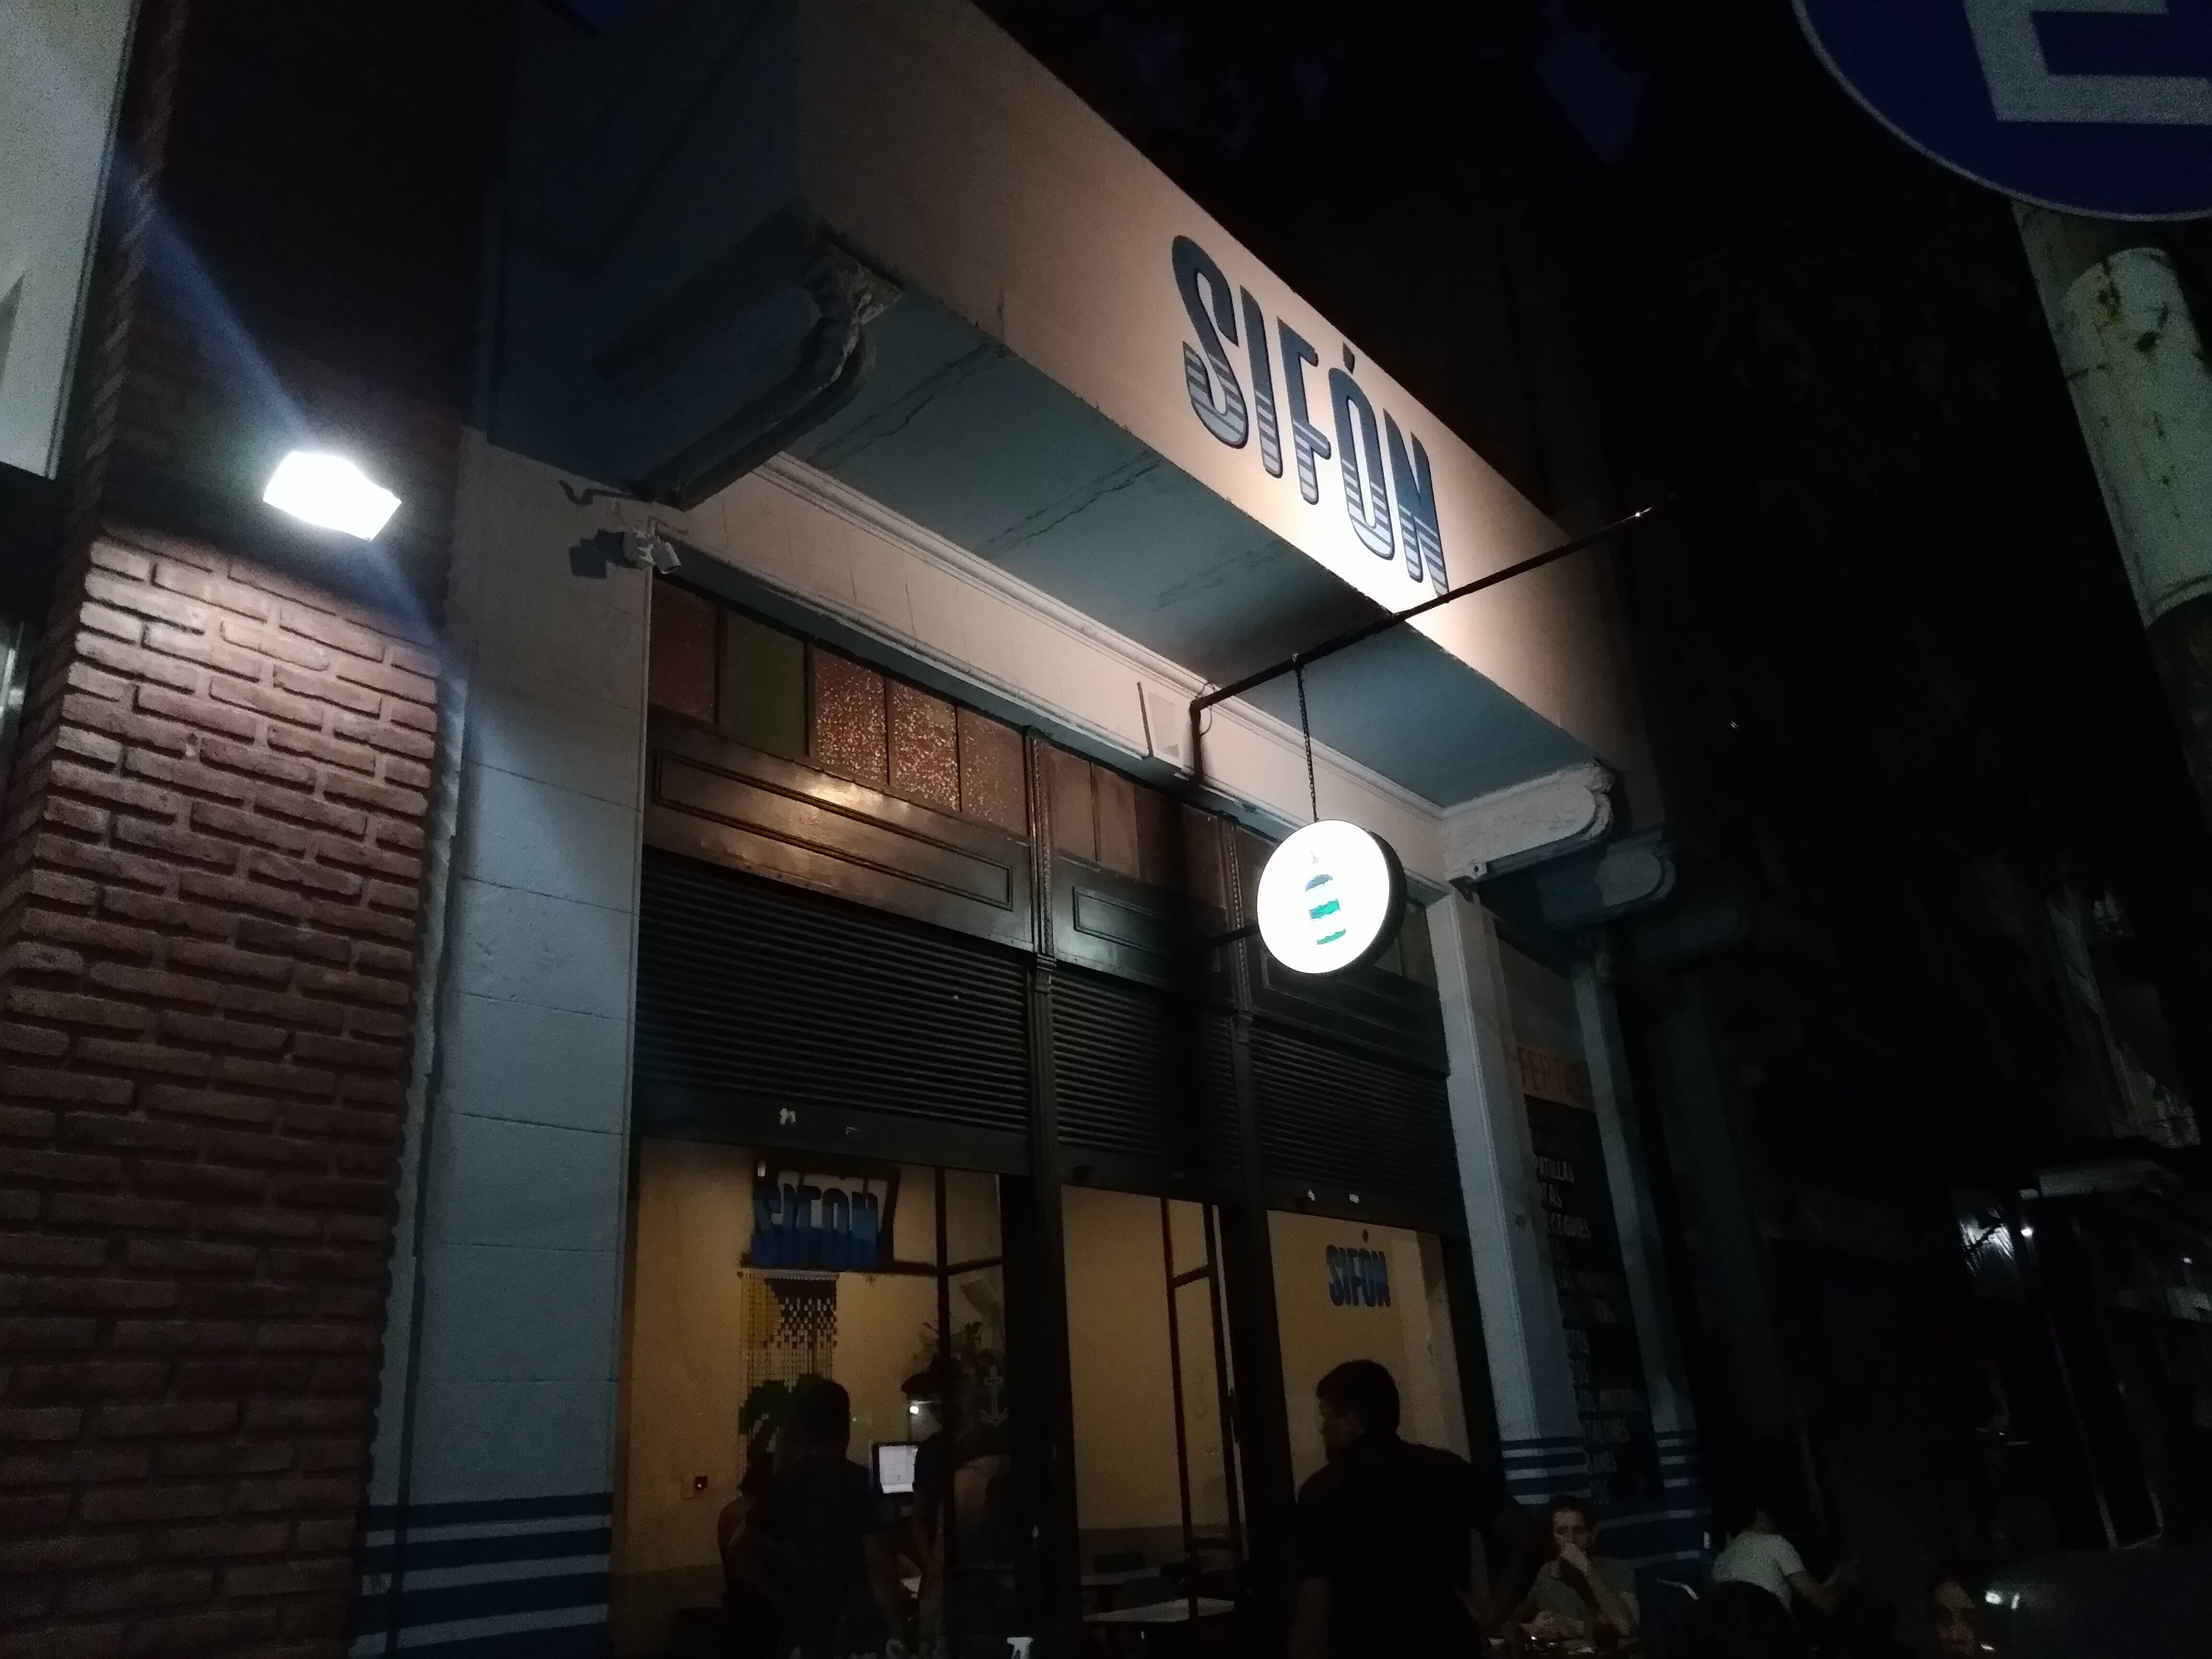 Sifón, um dos bares de Buenos Aires. Foto: Flavia Matos/ IG